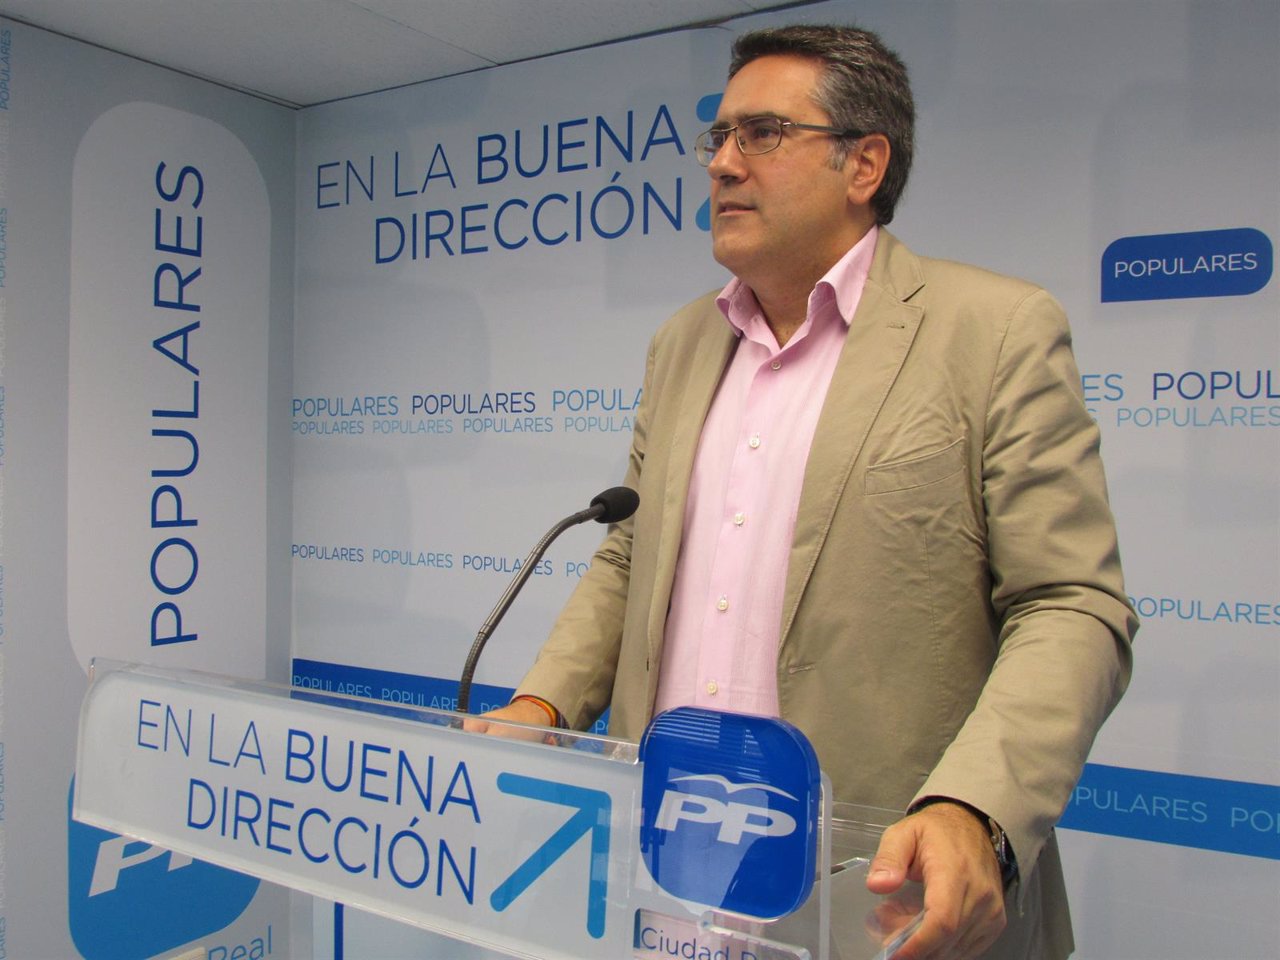 PP CLM (Nota De Prensa, Corte Y Fotografía) Miguel Ángel Rodríguez. El PP Y El P